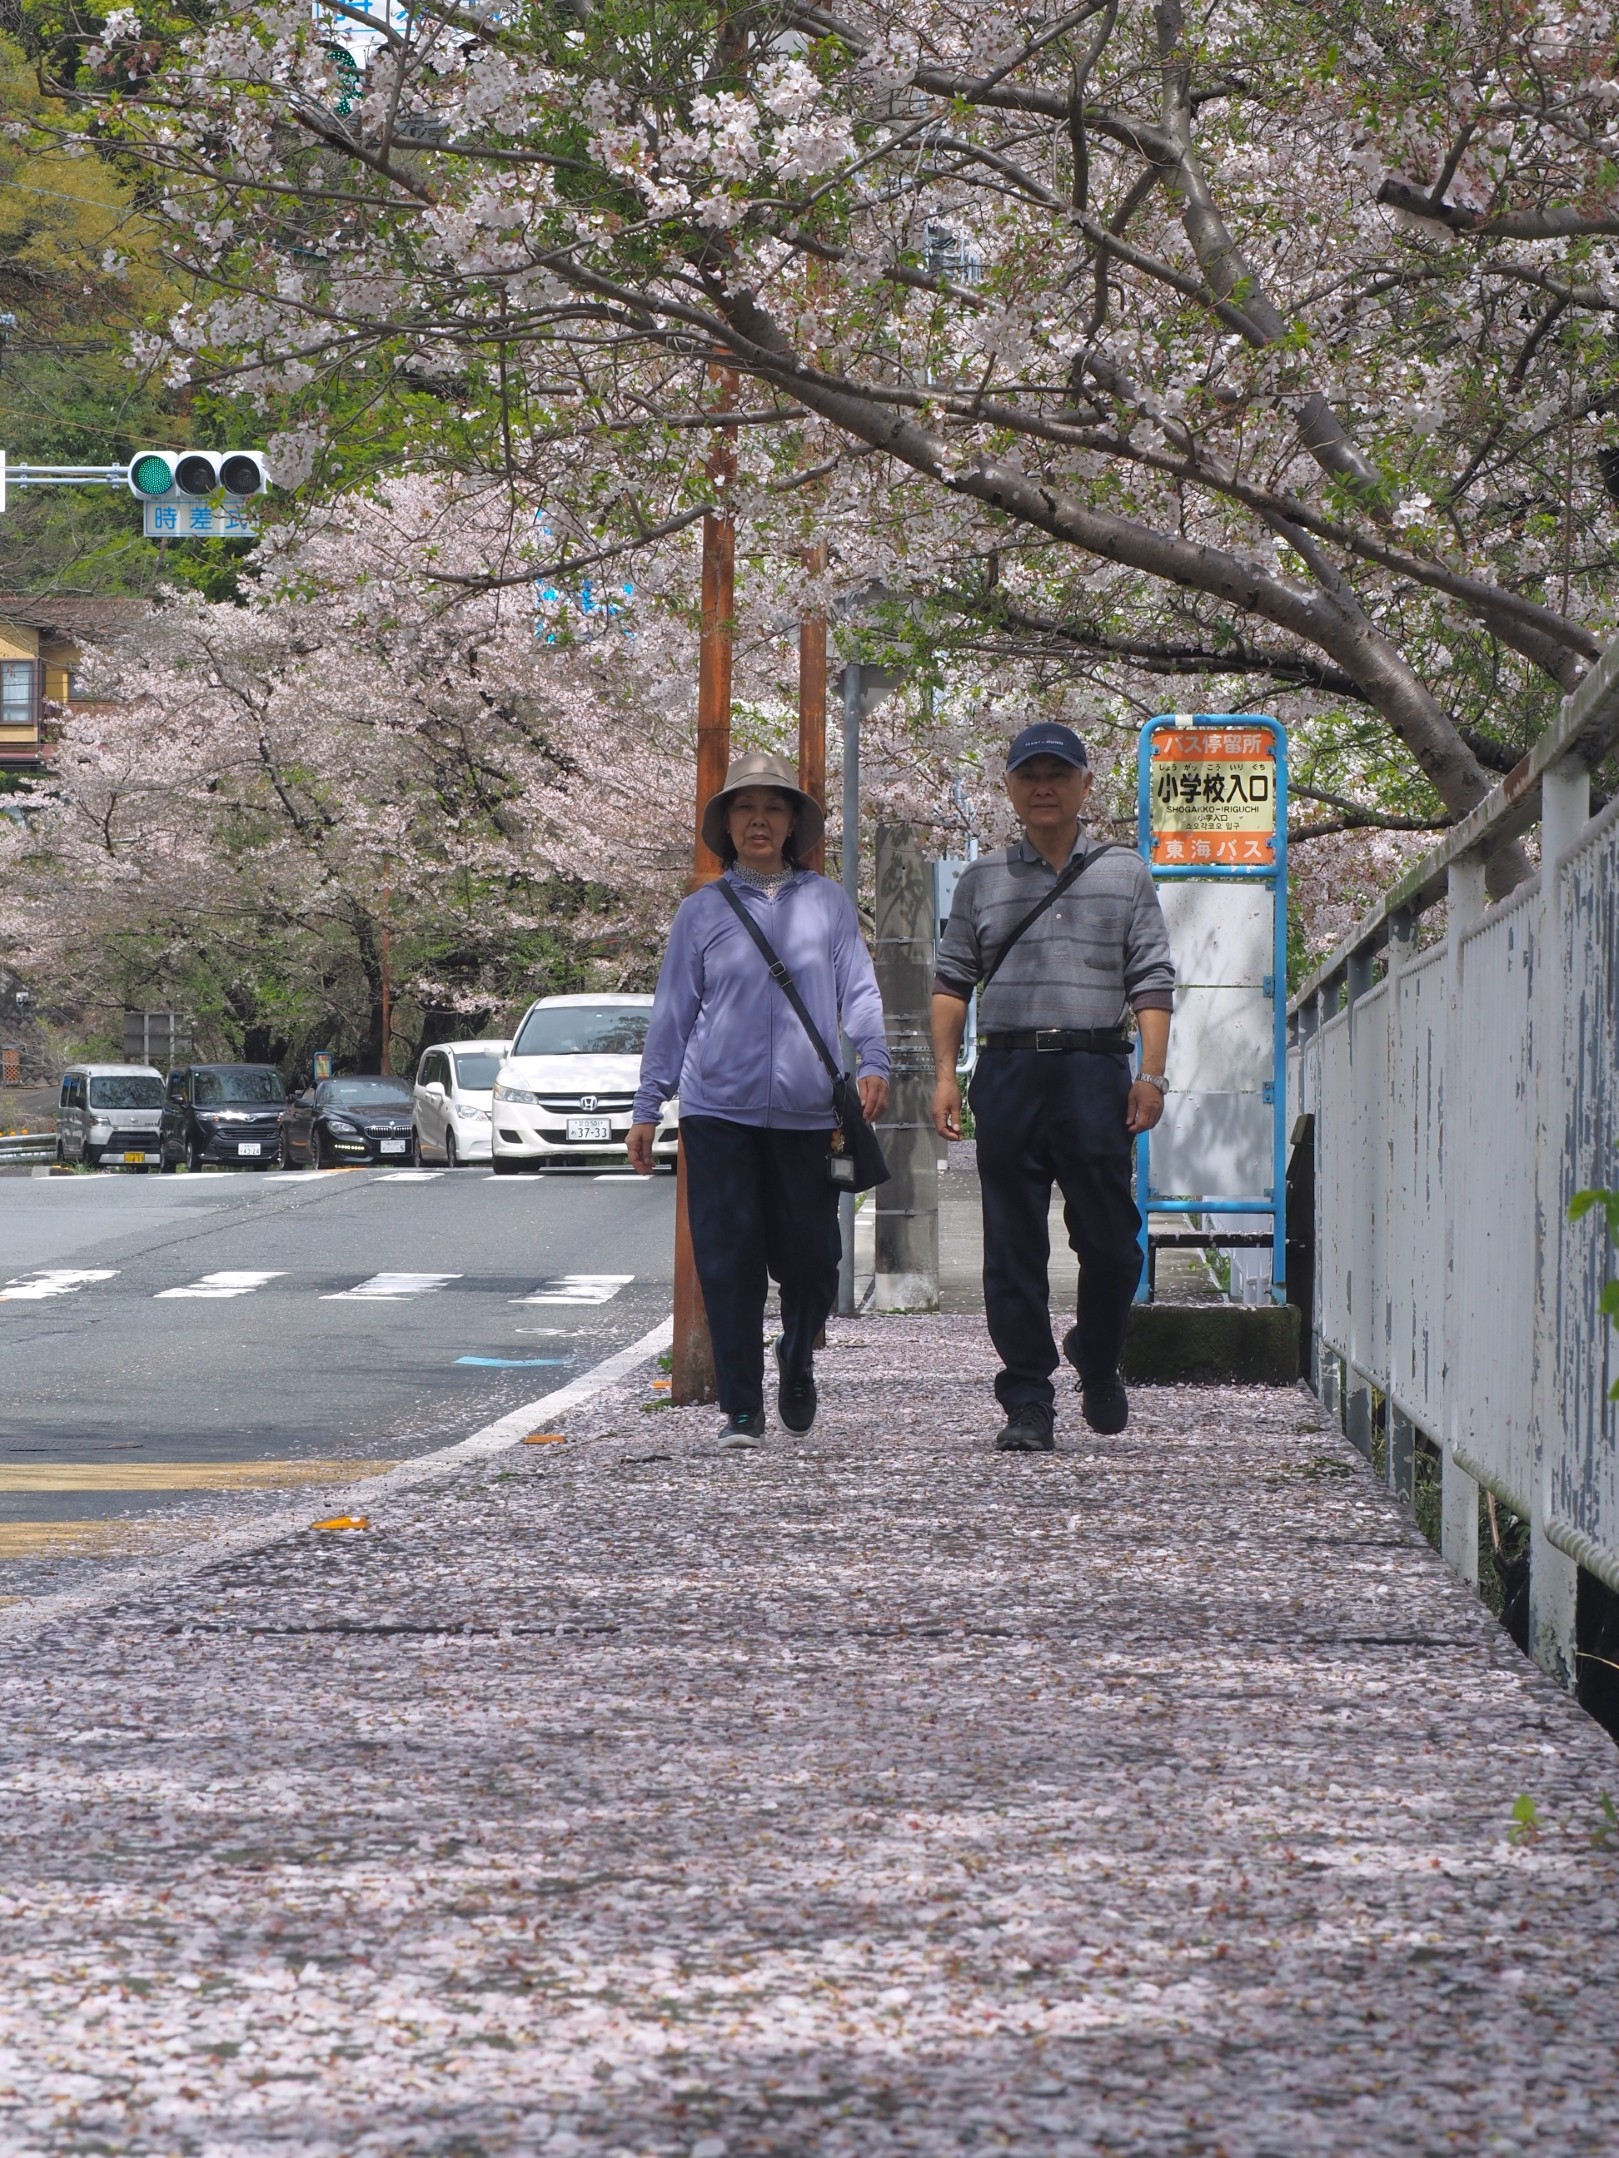 雨で散ったソメイヨシノの花びらが歩道を埋め尽くした＝熱海市伊豆山